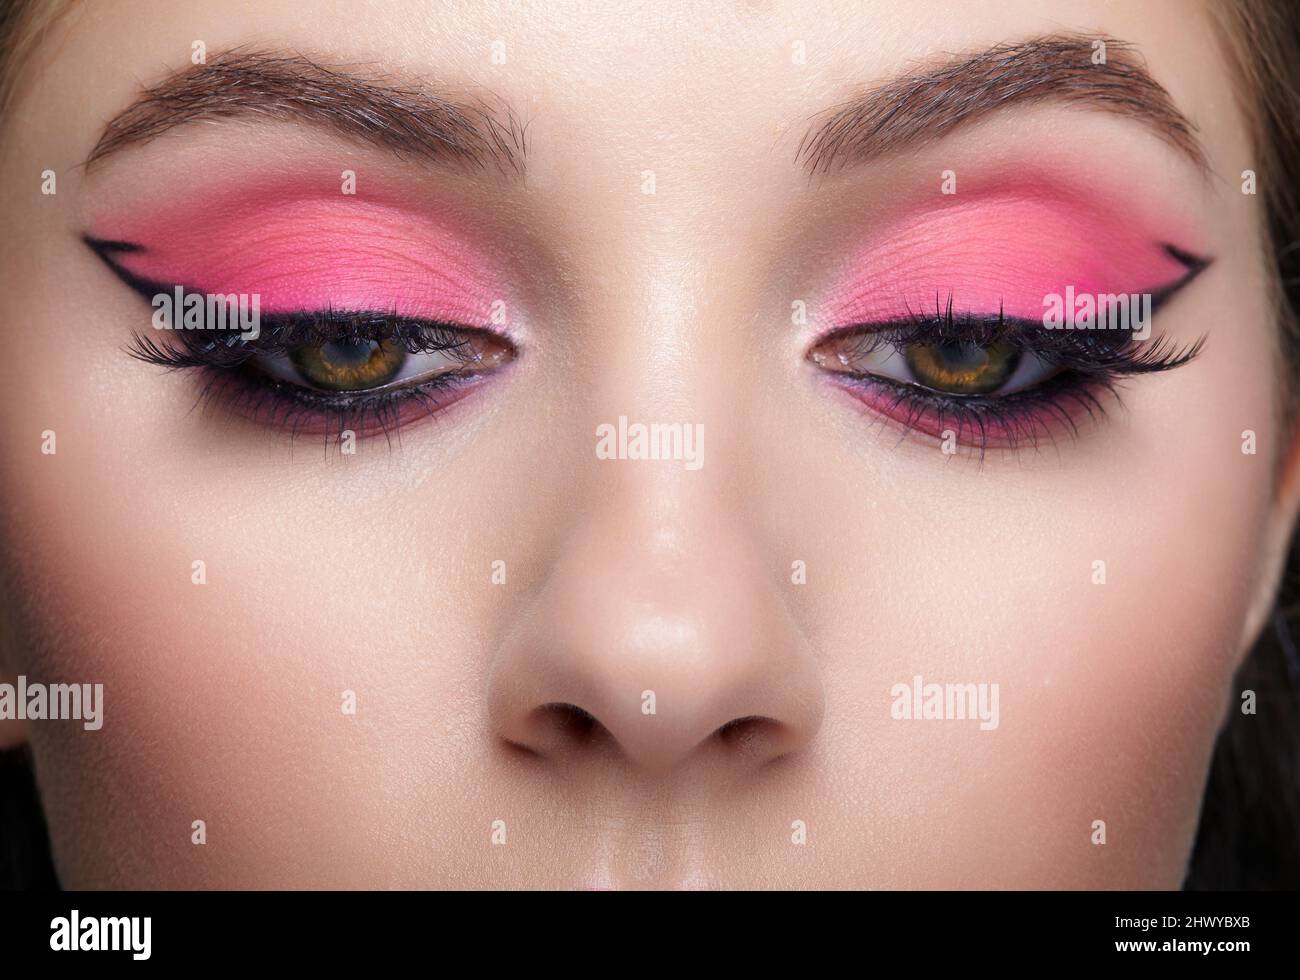 Primer plano macro de cara femenina humana. Mujer con aspecto oriental y  maquillaje de belleza de ojos rosas Fotografía de stock - Alamy